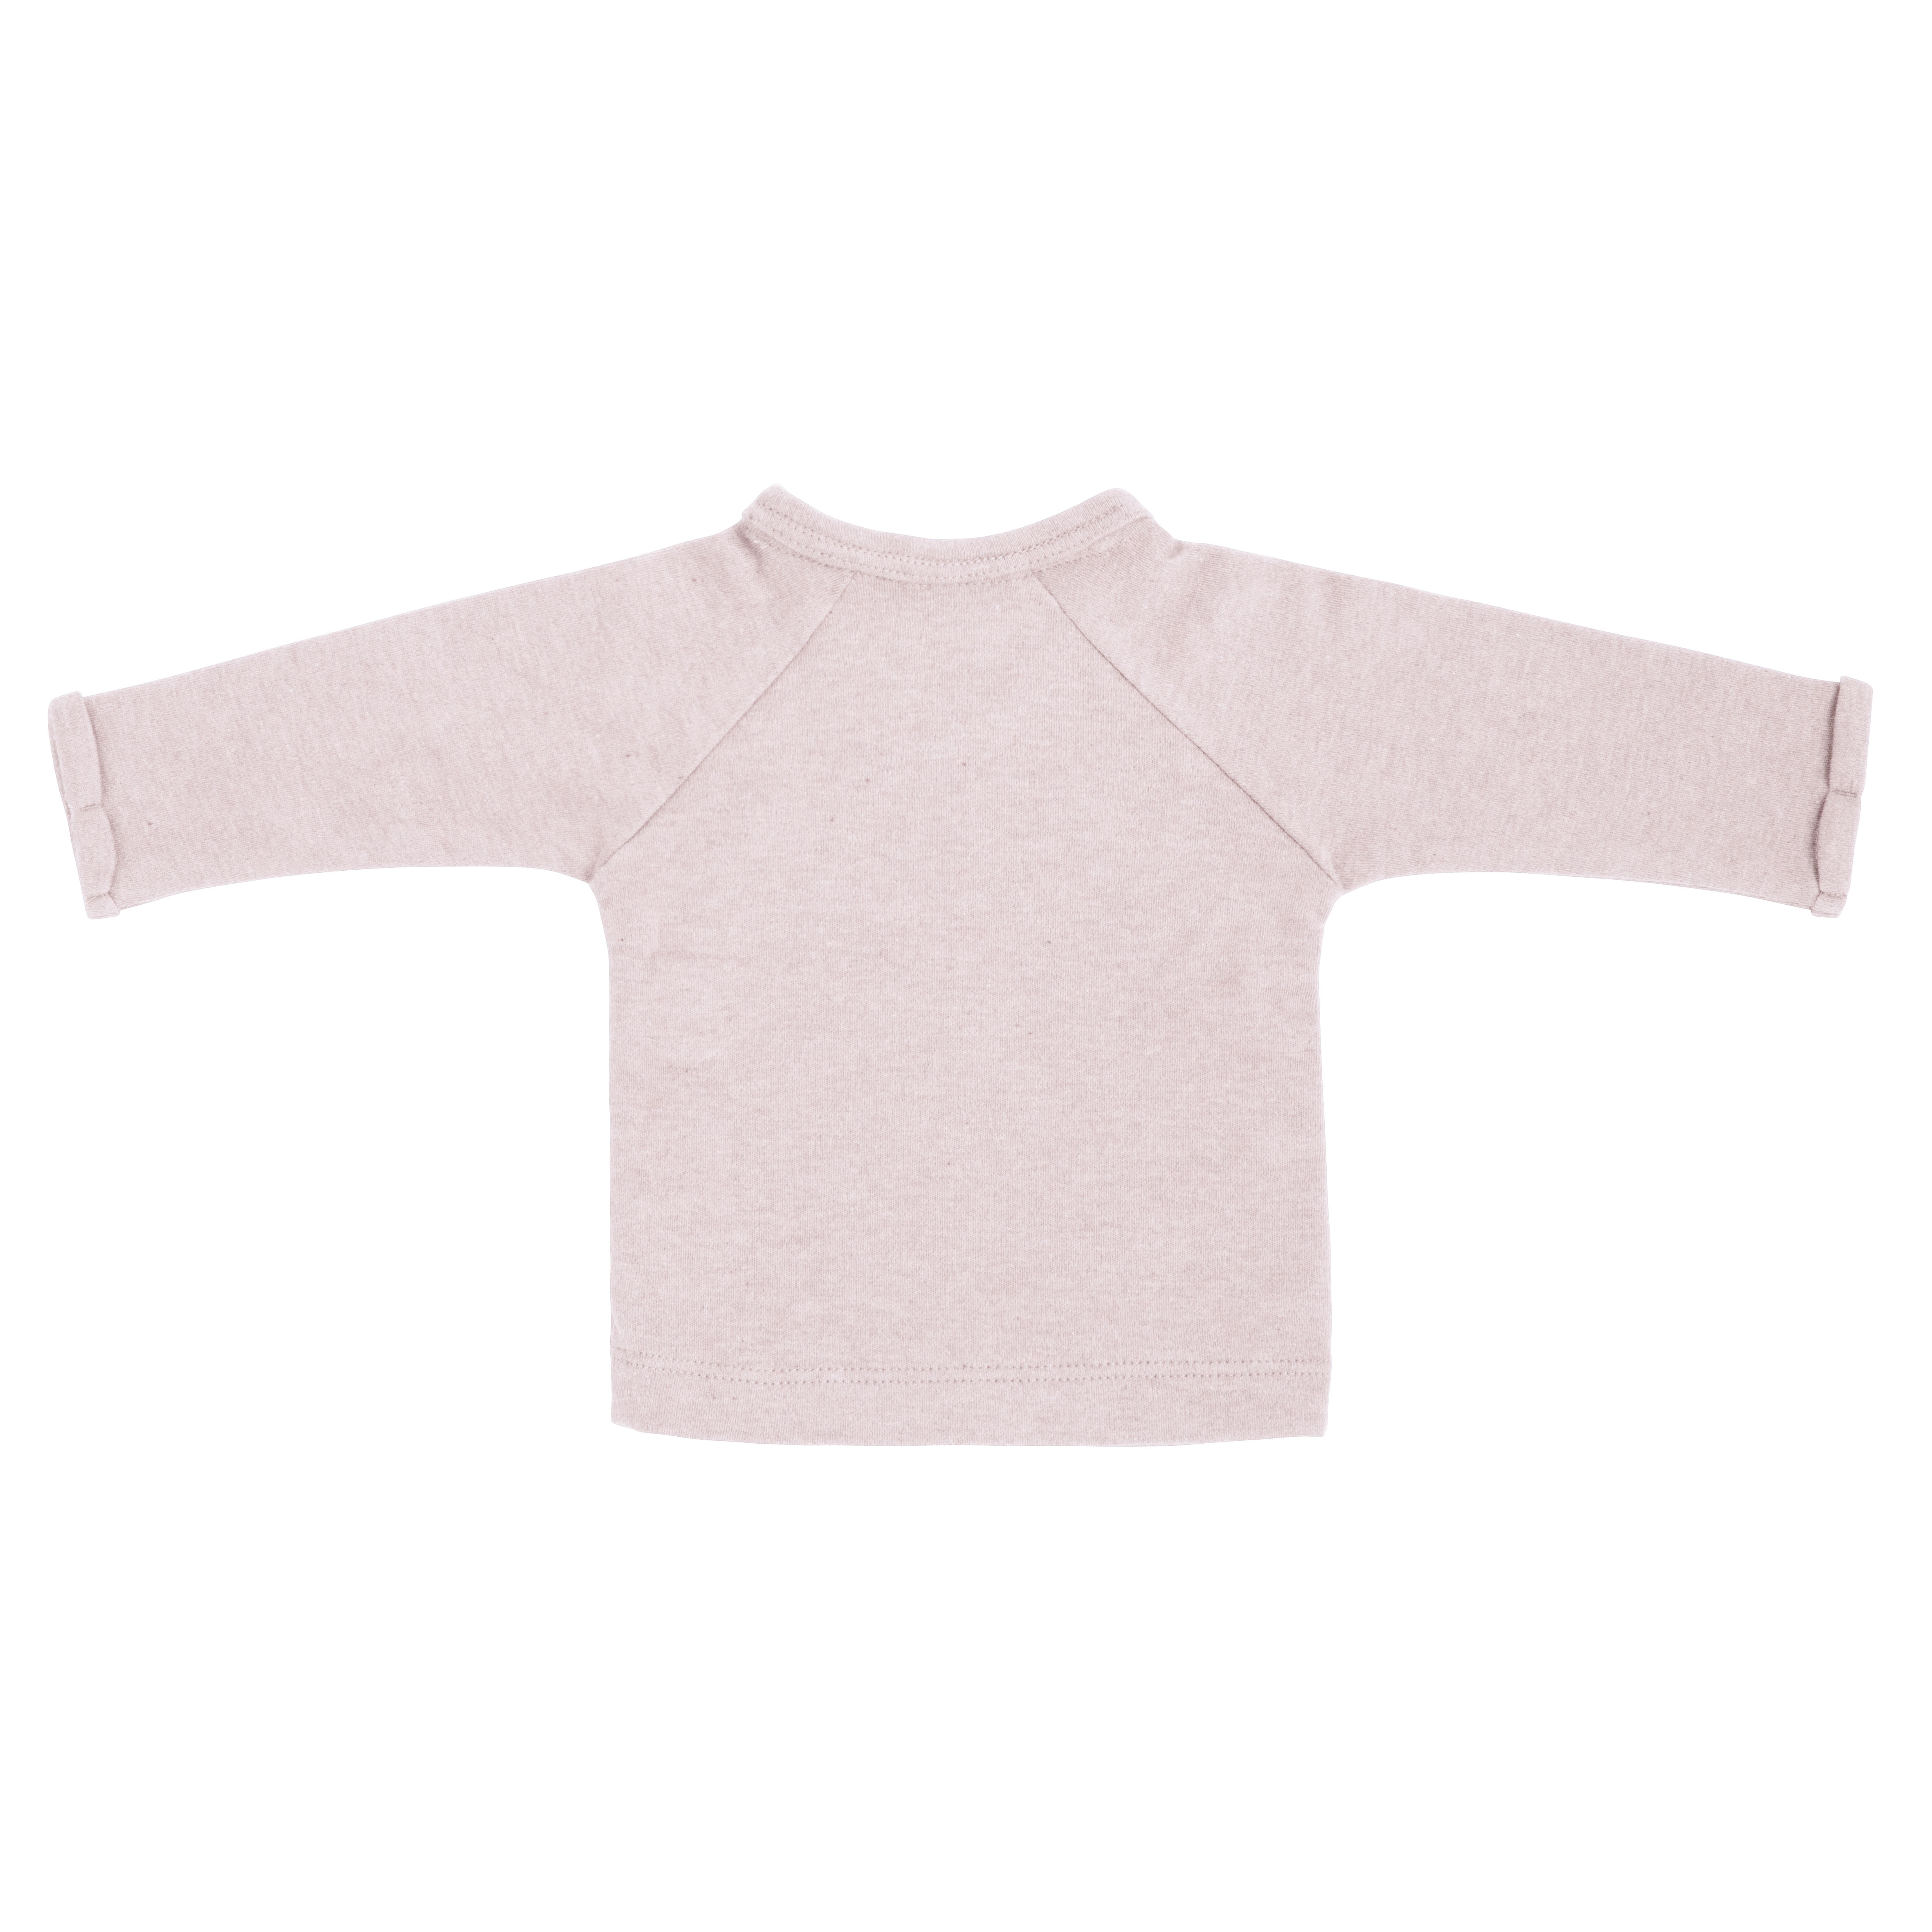 Pullover bébé cache-coeur Melange rose très clair - 44